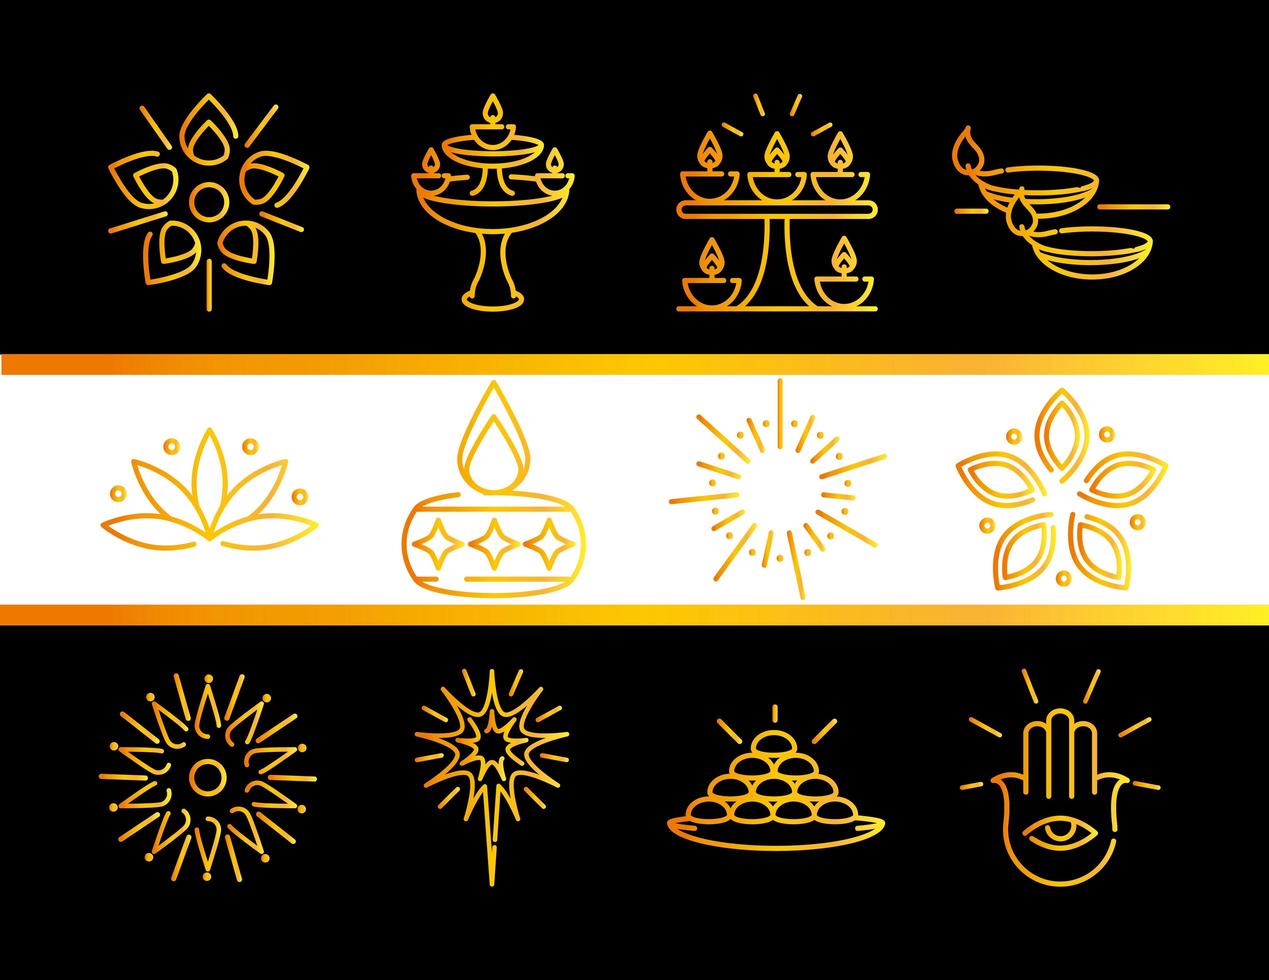 joyeux diwali inde festival deepavali religion gradient style icons set vecteur